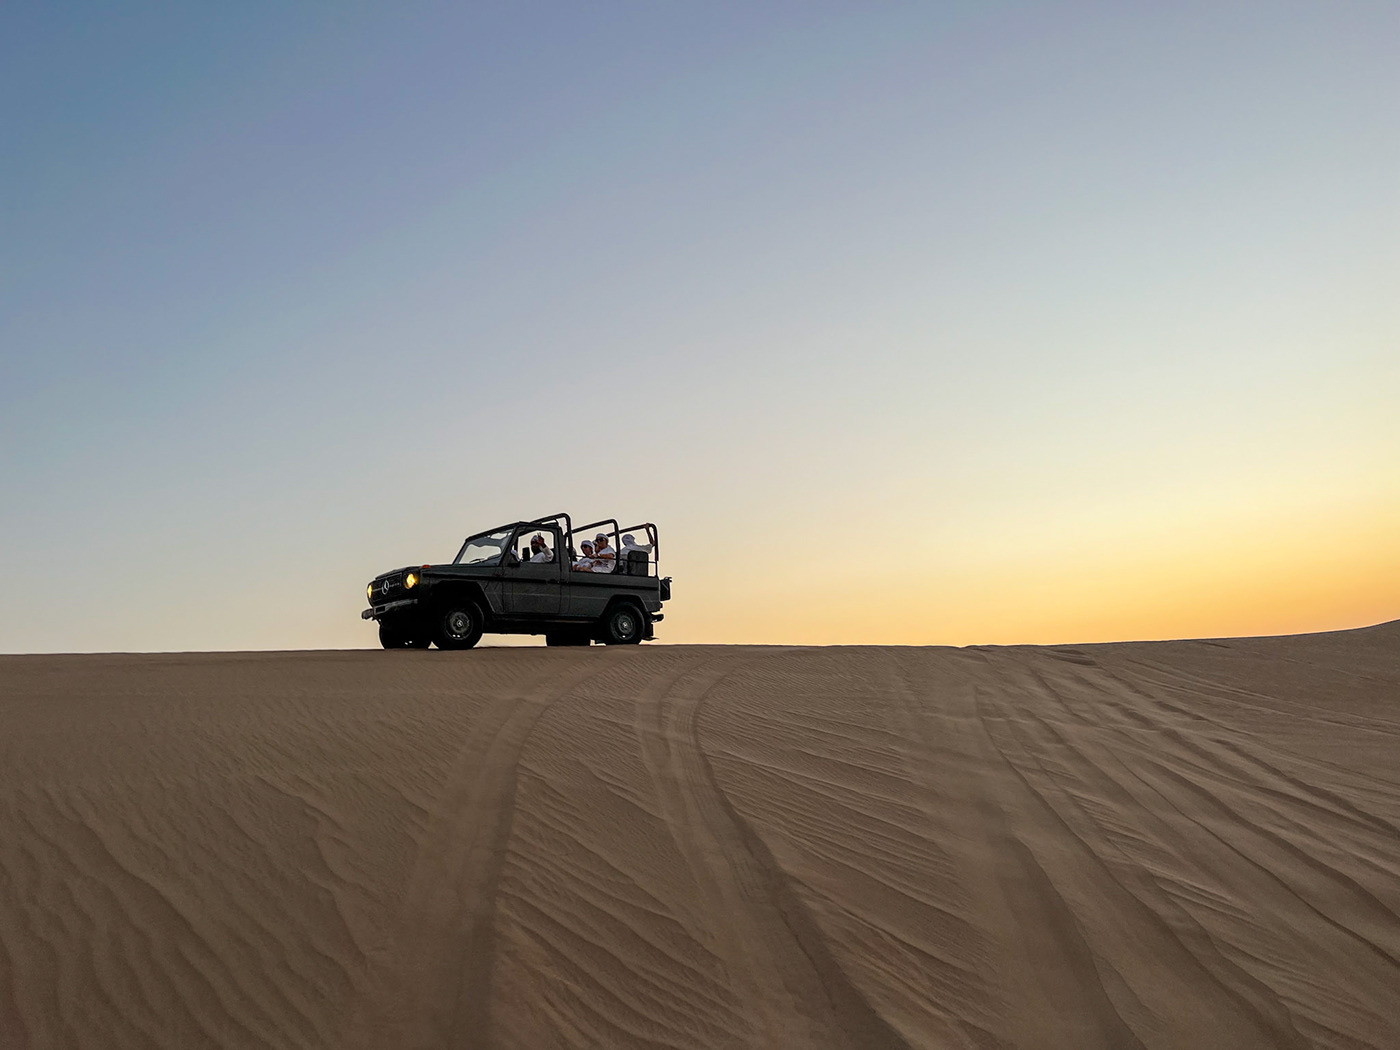 dubai United Arab Emirates sand dunes desert travel photography dune buggy